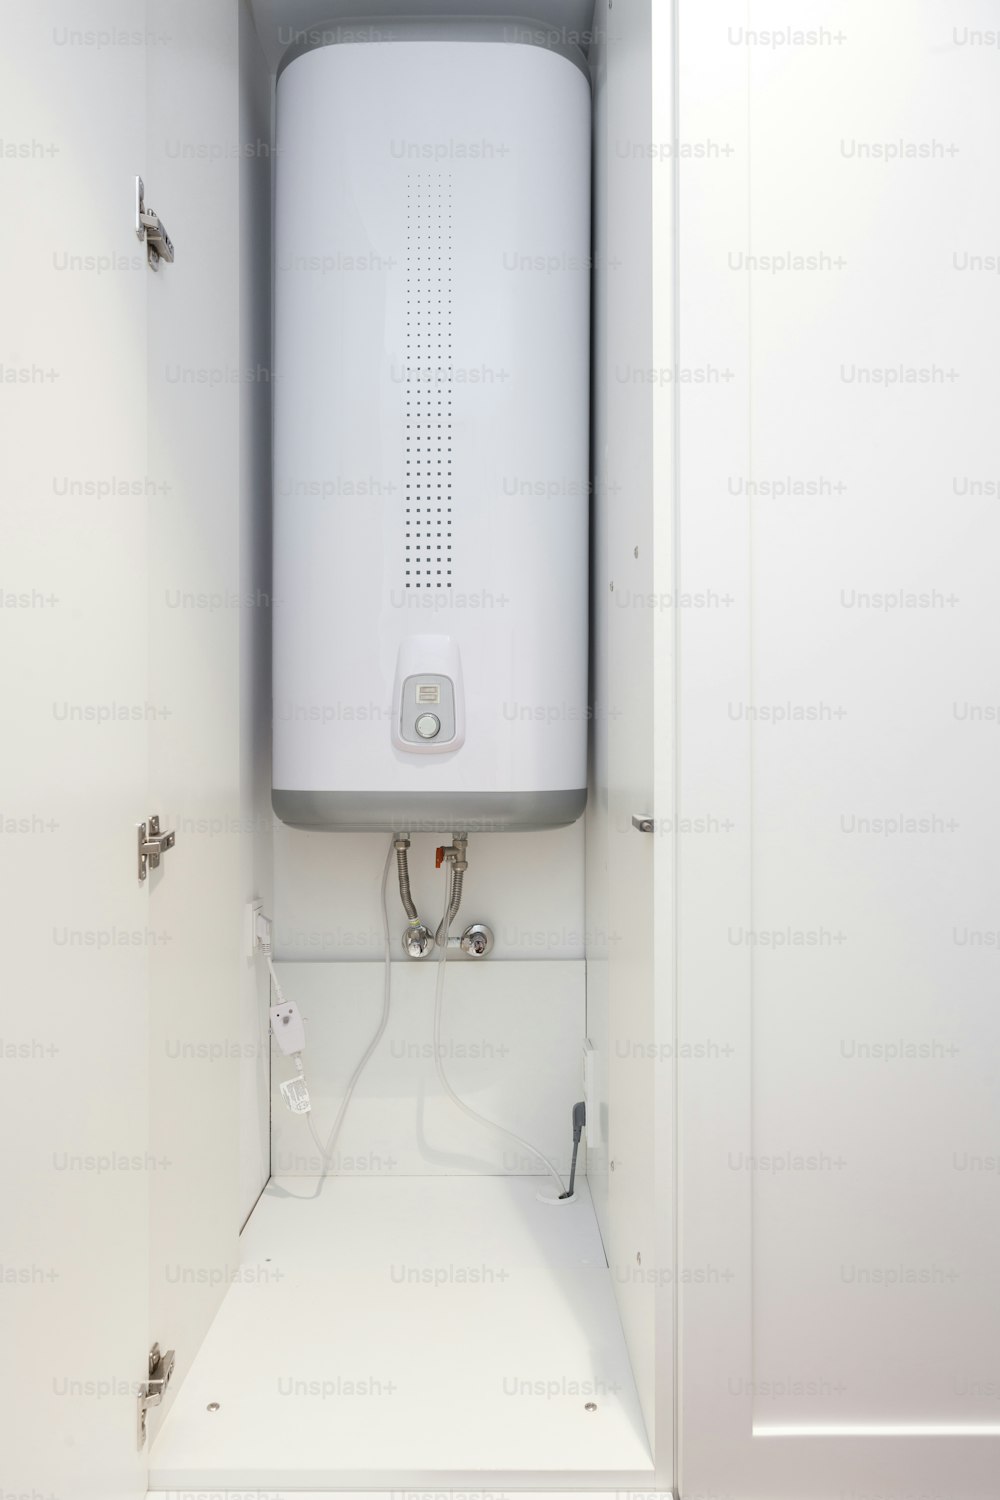 Caldera eléctrica (calentador de agua de pared) en el baño